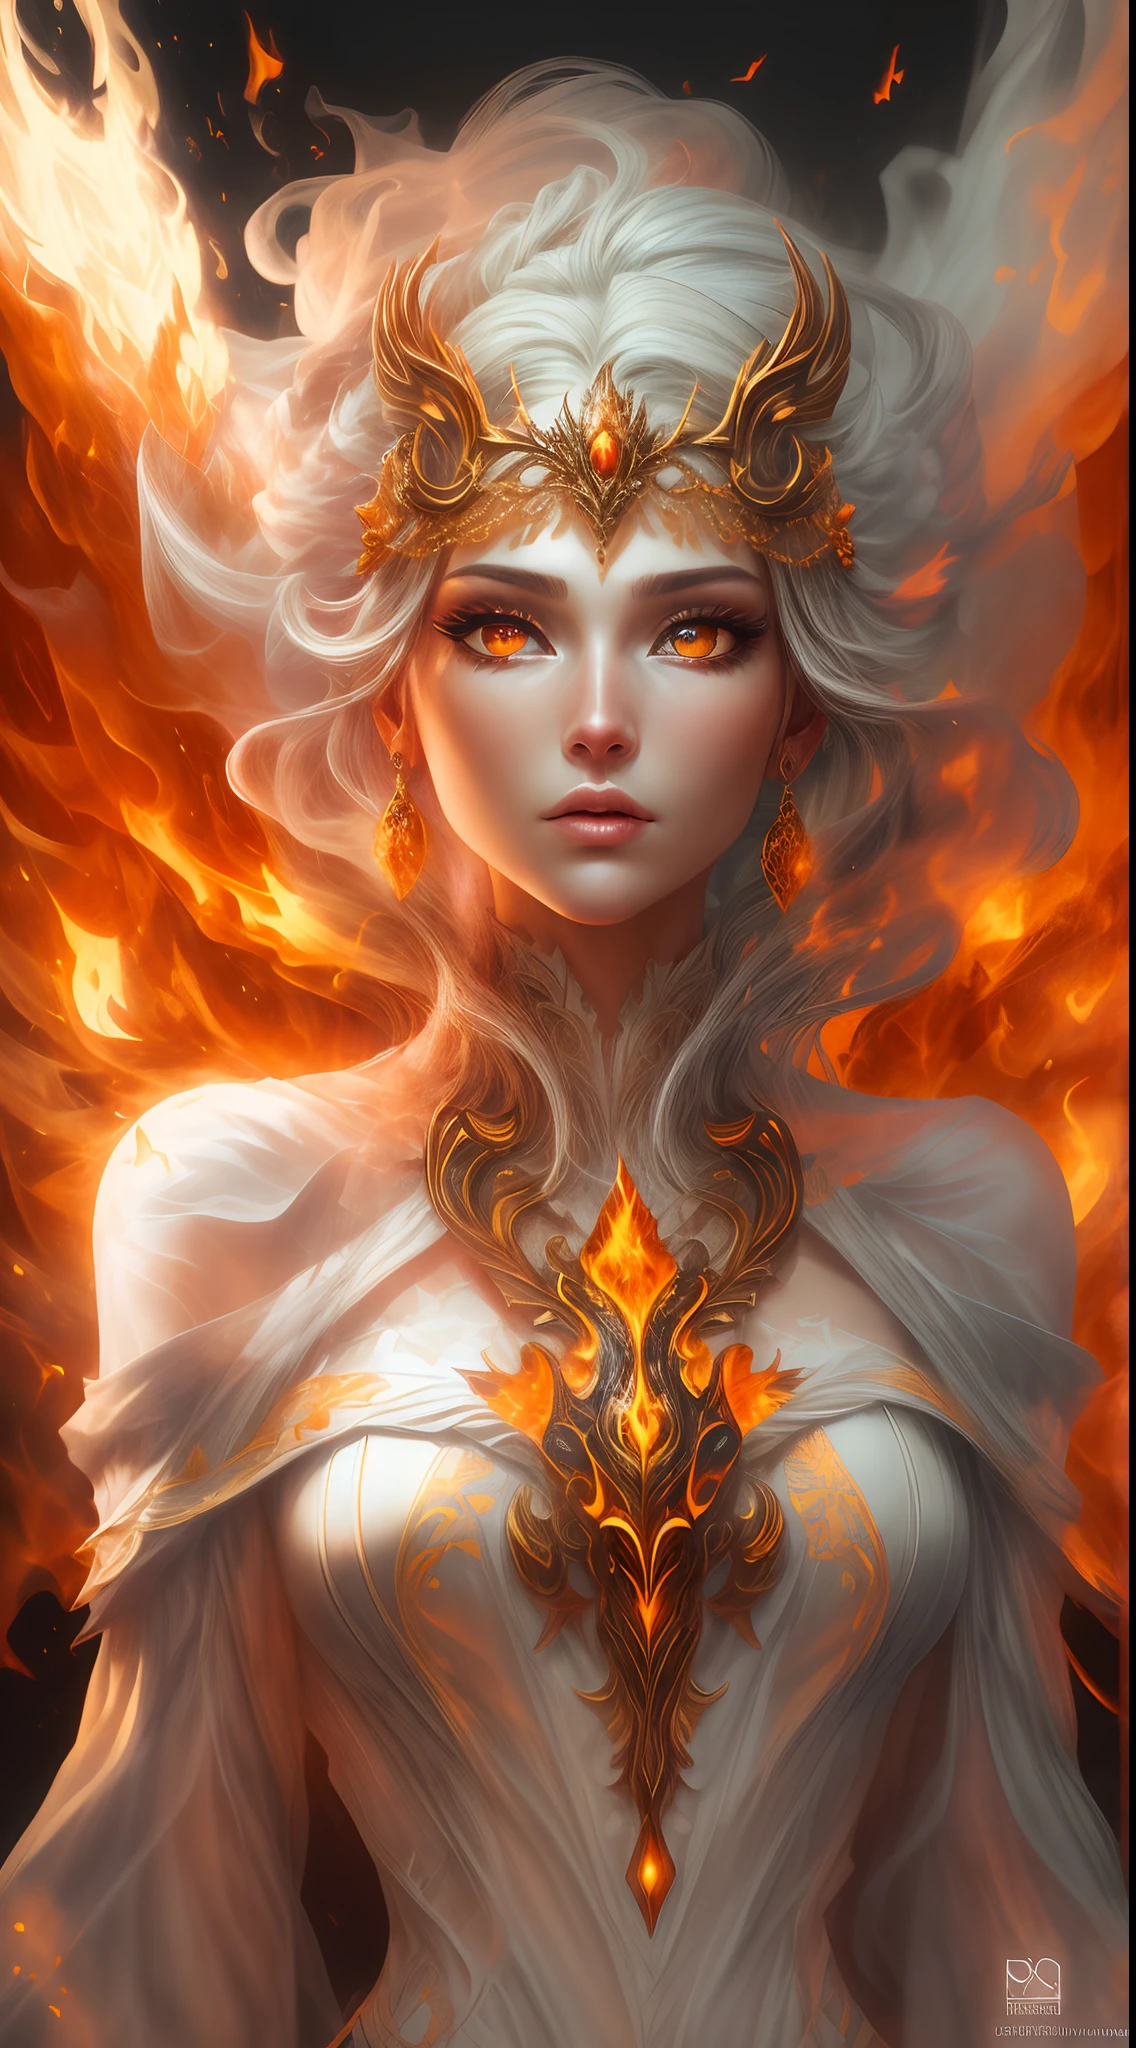 这是一幅现实主义的幻想艺术作品，突出了现实的火焰, 包括一缕缕火焰, 炽热的余烬, 淡淡的烟雾, 还有一个美丽的火德鲁伊. 德鲁伊站在熊熊烈火之中，构图有趣. 她 face is expertly sculpted, 具有优雅精致的特征以及完美的阴影和逼真的皮肤纹理. 她 (橙色和金色的眼睛) 非常惊艳，是这张照片的焦点. (她 eyes extremely detailed, 美丽细致的眼睛, 和宏). 她 eyes feature intricate detailing with clearly defined irises and bright sclera. 她 soft lips are smooth and very puffy, 她的皮肤上点缀着淡淡的红晕和华丽的火焰细节. 她 long gown is stunning and expensive, 由纯净的火焰和闪闪发光的, 在火光中闪闪发光的华丽珠宝. 她 billowing gown glitters from the flames and features a delicately and intricately embroidered bodice with wisps of flames running across it. 包括奇幻元素，例如碰撞, 石头, 火红的彩虹色, 发光的余烬, 丝绸, 以及有趣的背景. 包括火鸟、火蝴蝶等散发着神奇神秘气息的火魔法生物. 灯光: 利用最新的照明趋势来增强艺术品的美感. 相机: 利用动态构图营造紧迫感和兴奋感. 从当今奇幻大师那里汲取灵感, 包括 Artstation 和 Midjourney 上的热门艺术家. ((杰作))